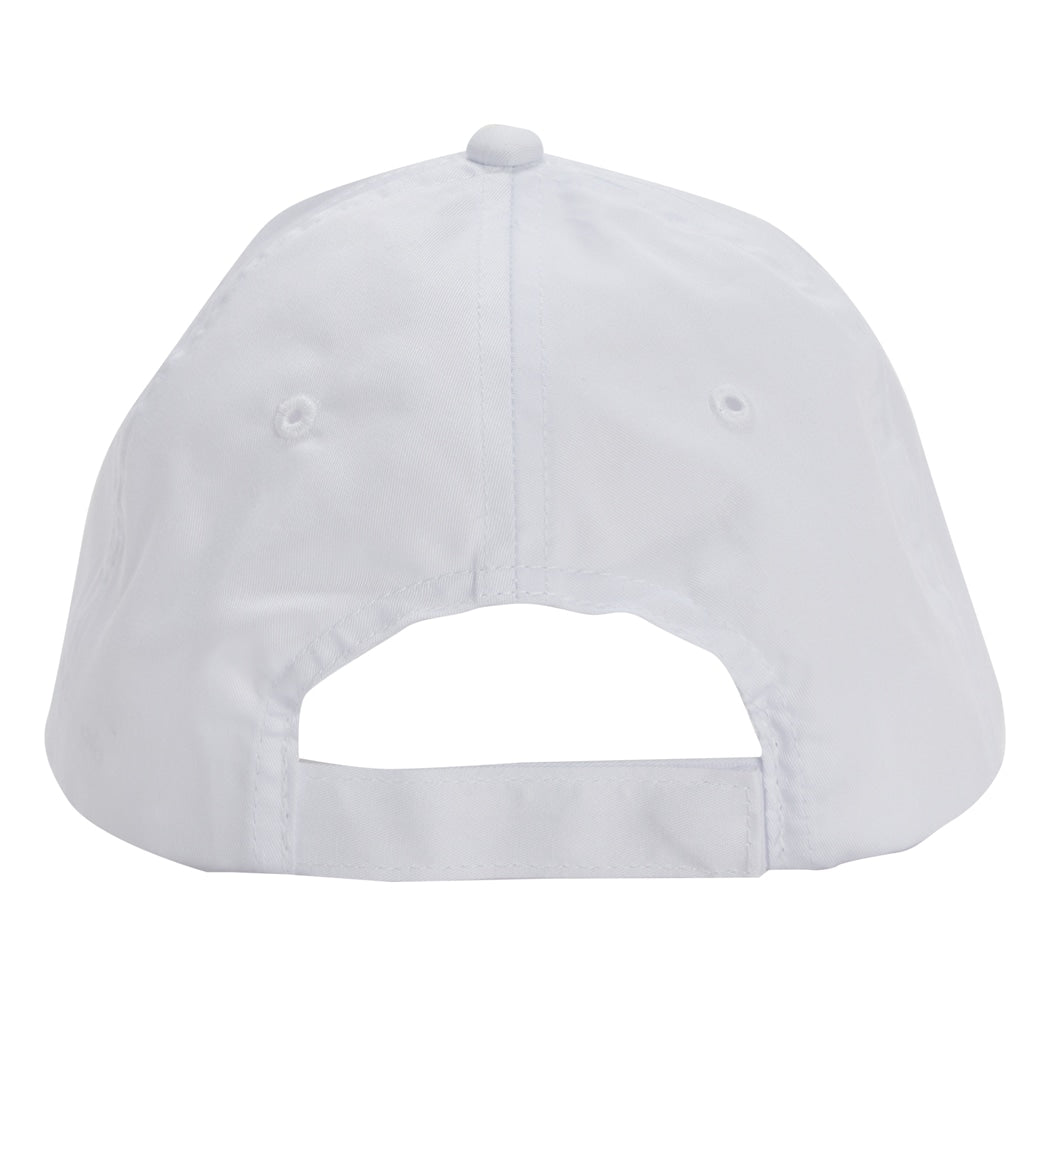 Alo Yoga Men's Off-Duty Cap, White/White, One Size : : Fashion